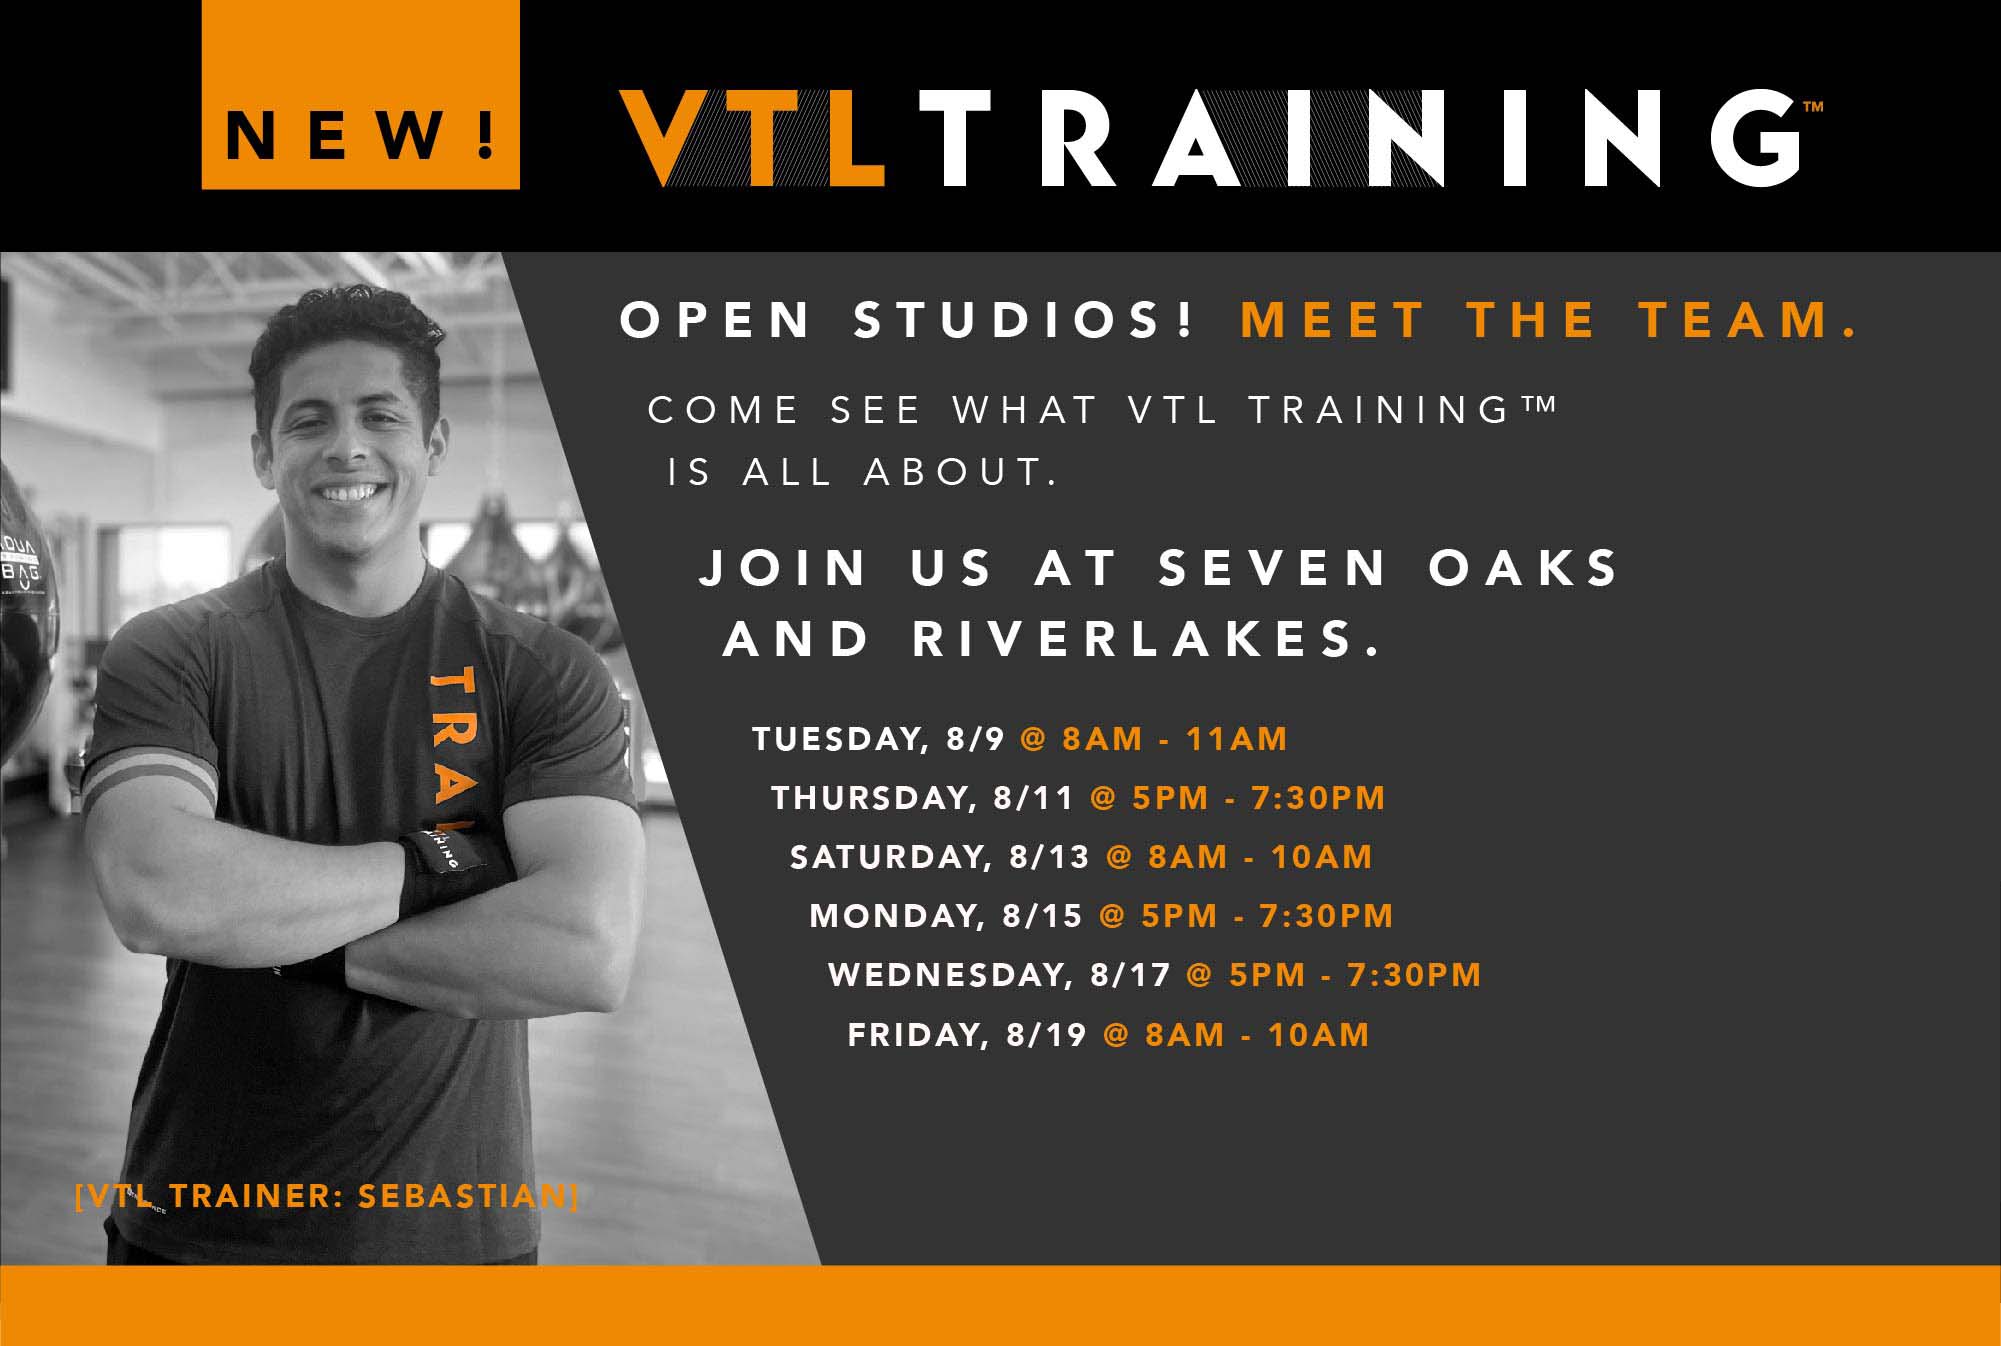 VTL Training Open Studios at In-Shape